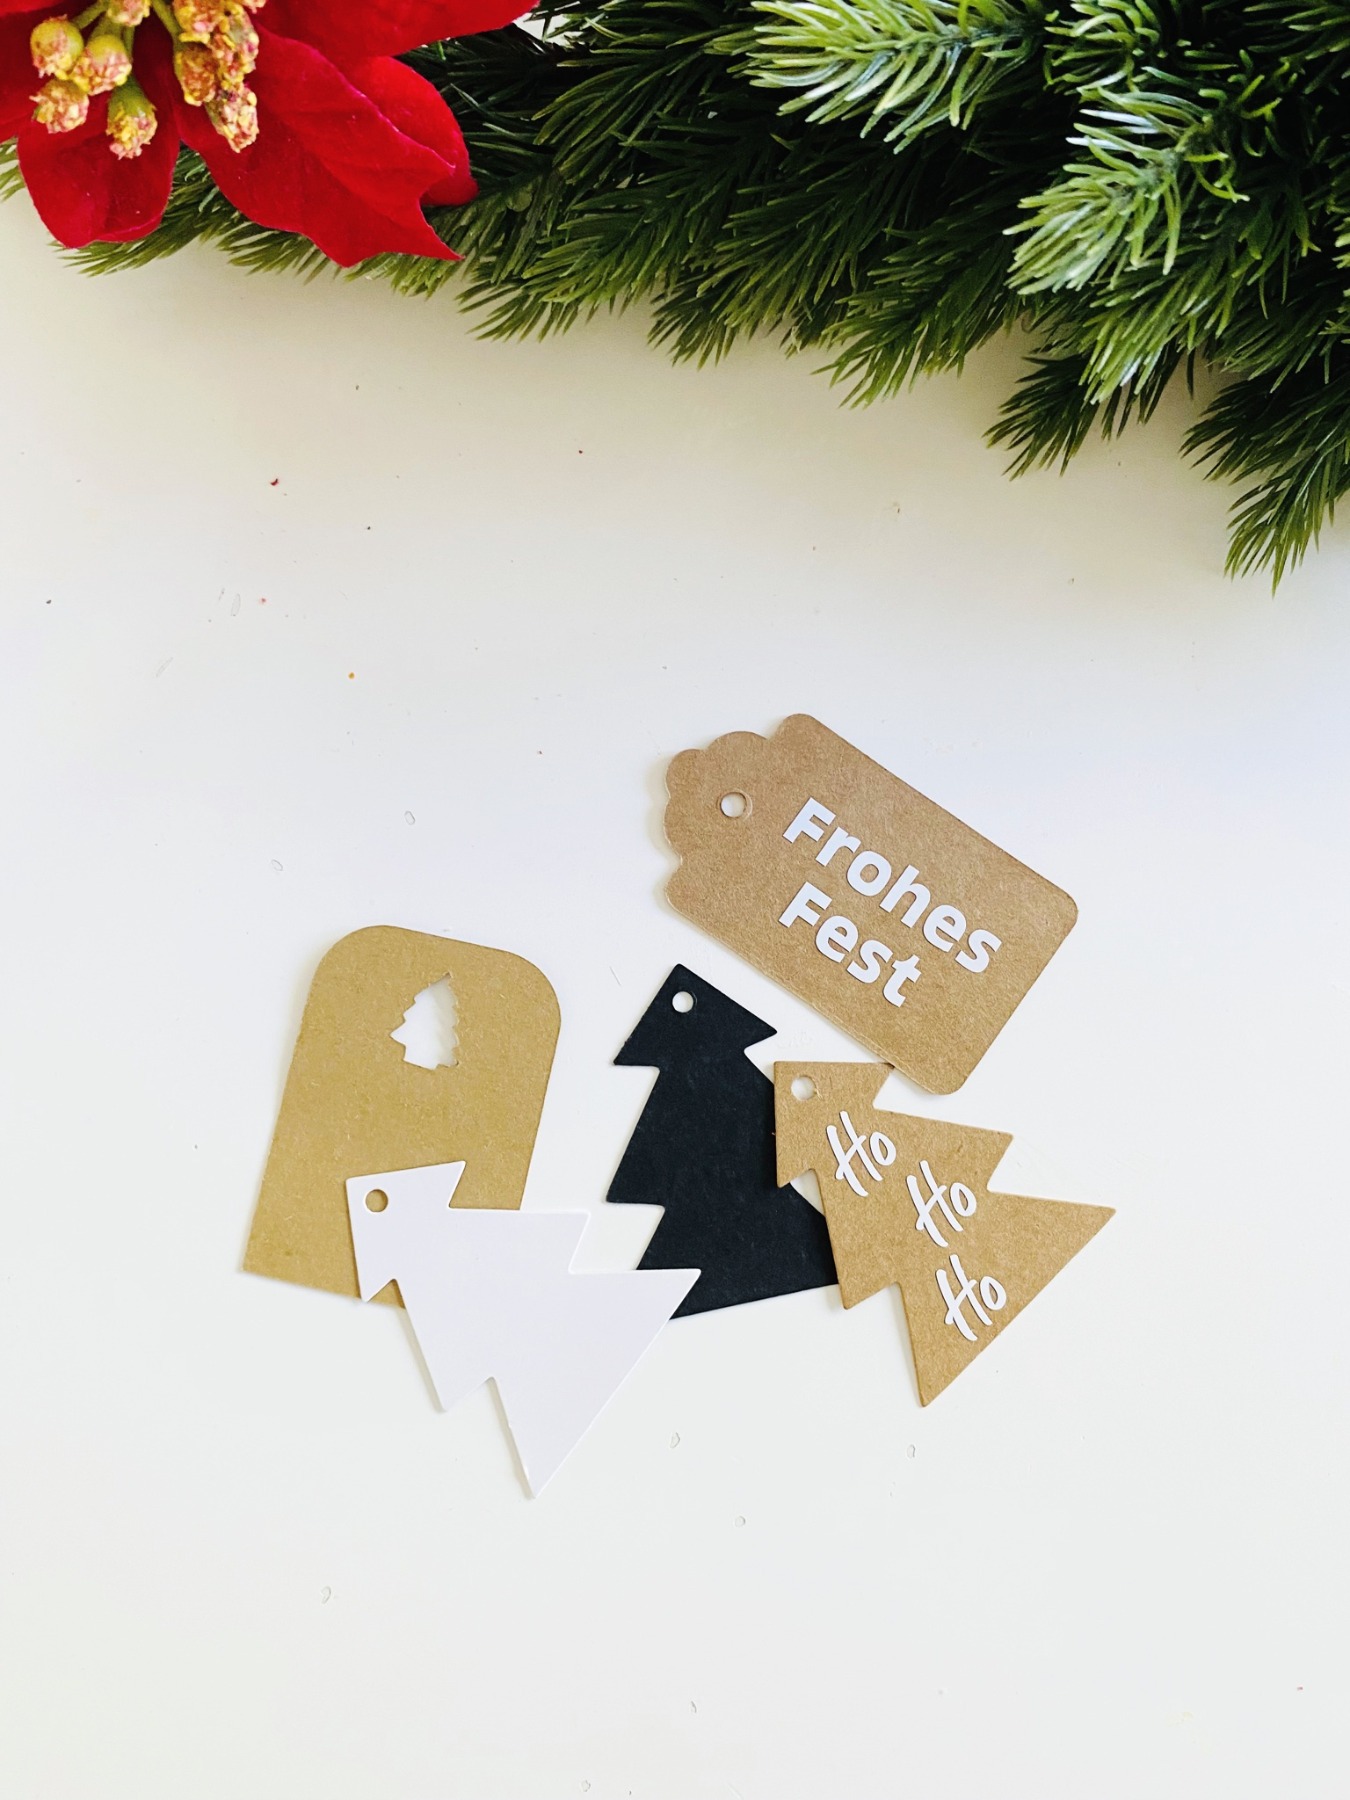 Bastelset für Weihnachten, DIY Kit Weihnachtskarten basteln, Weihnachtsgeschenke verpacken Ideen 4